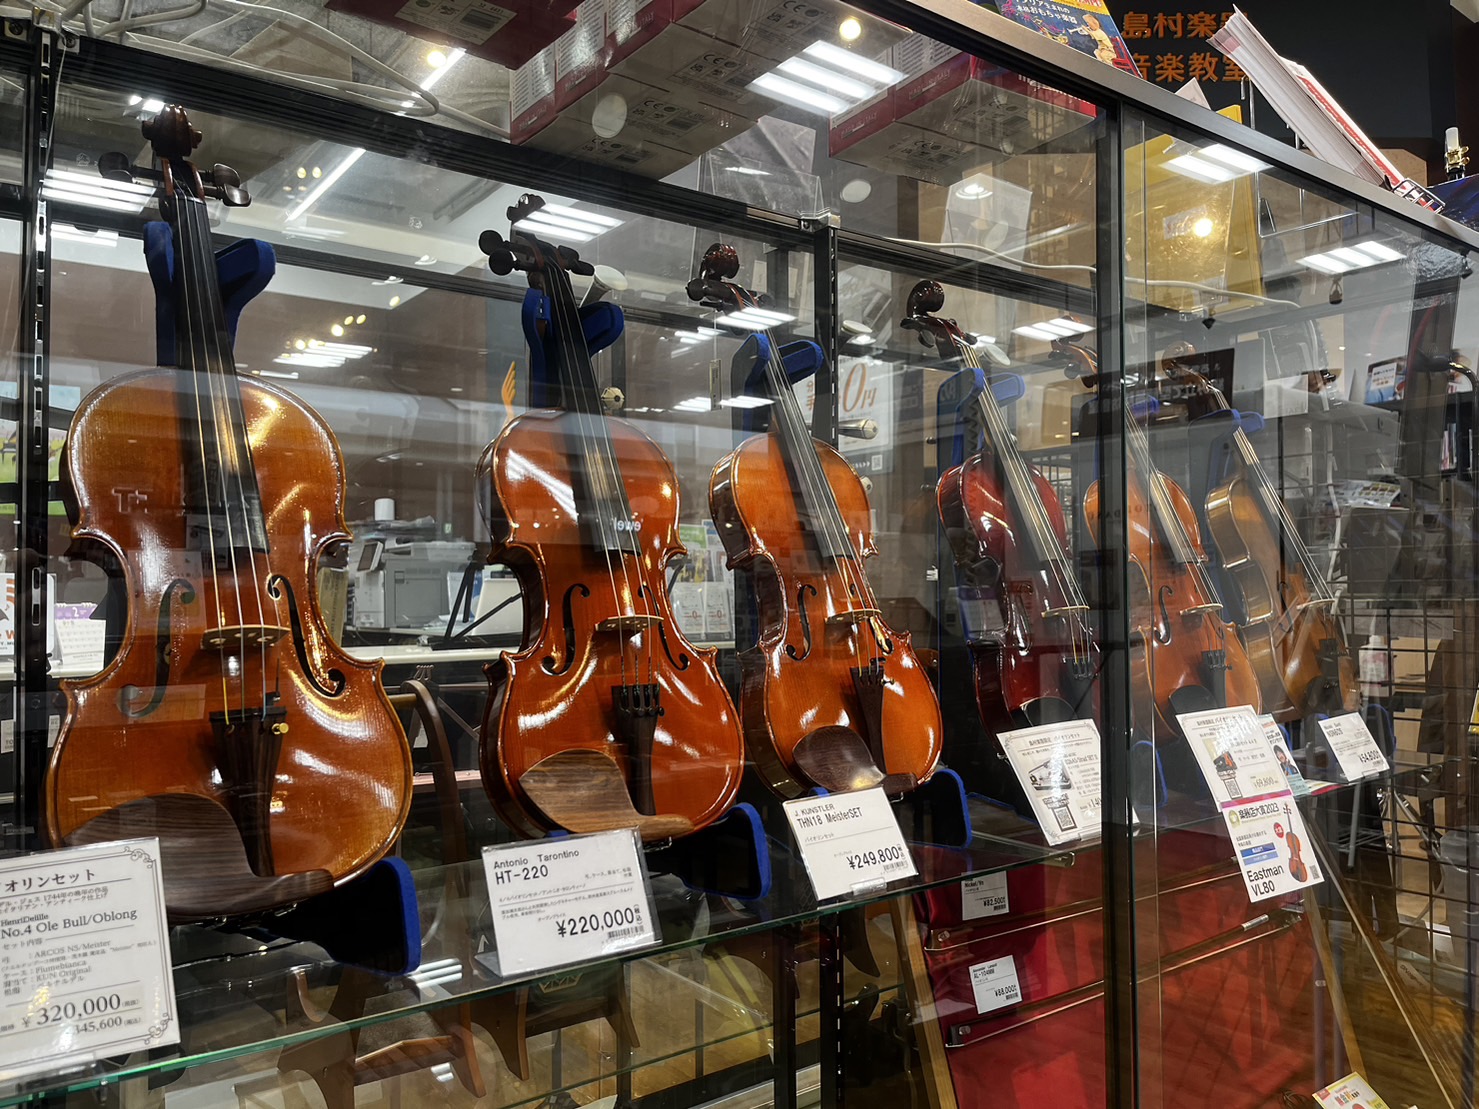 皆様こんにちは！弦楽器担当の浅井です。岡崎店では、4/4サイズからお子様用の分数ヴァイオリンまで展示しております。店頭に置いていない機種の試奏やお取り寄せもご案内させて頂きます。どうぞお気軽にお問合せ下さい♪ CONTENTS在庫情報在庫情報 4/4バイオリン サイレントバイオリン 分数バイオリン  […]